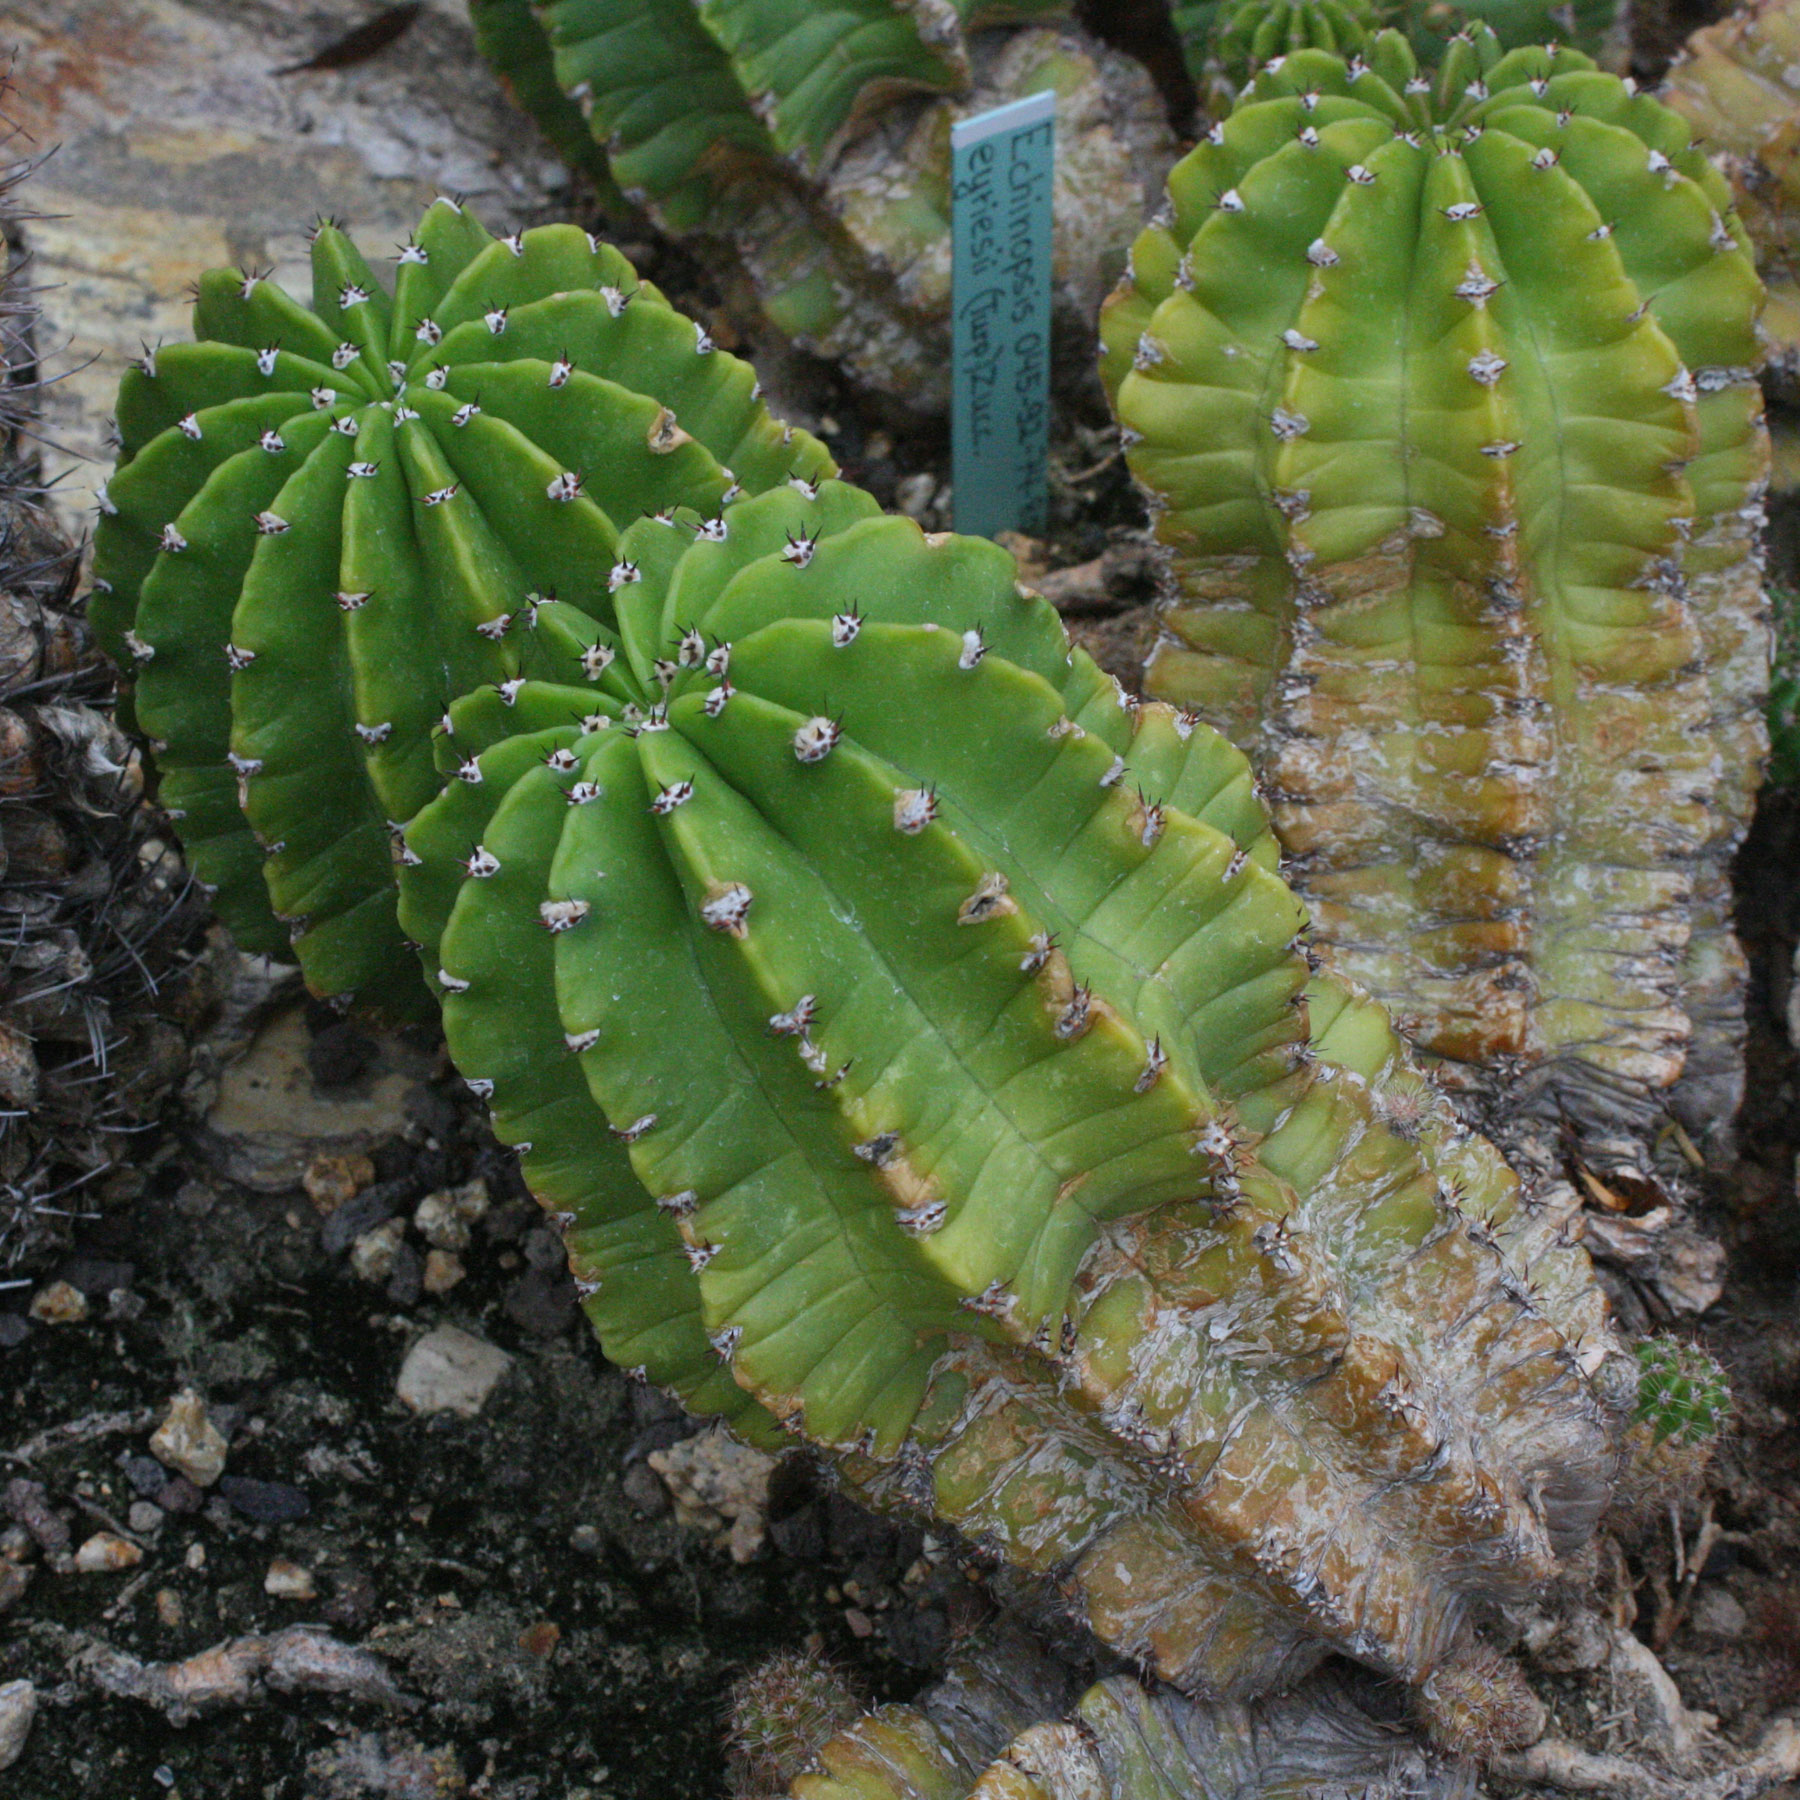 Echinopsis eyriesii